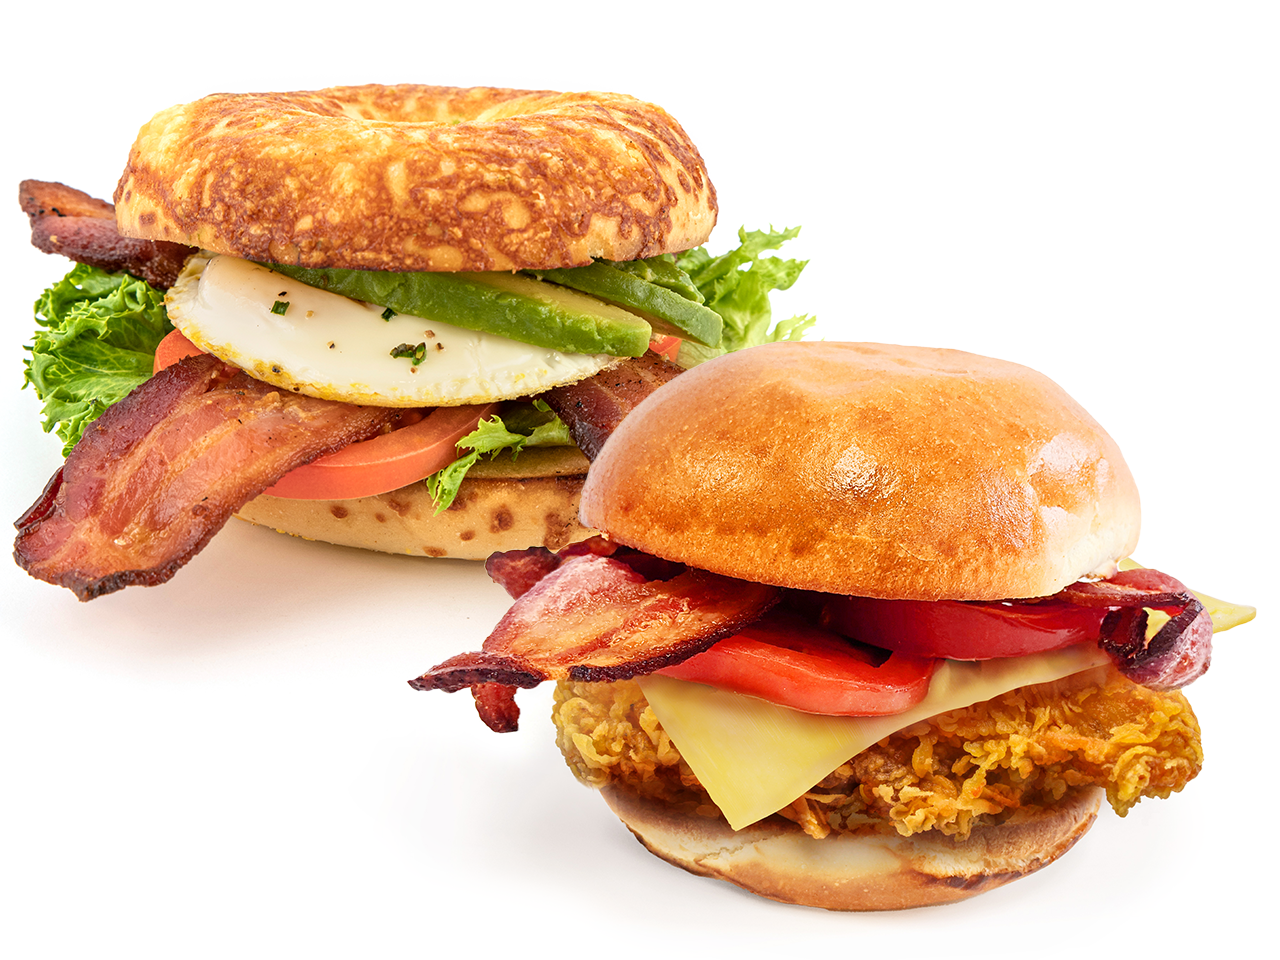 Breakfast sandwich and chicken burger